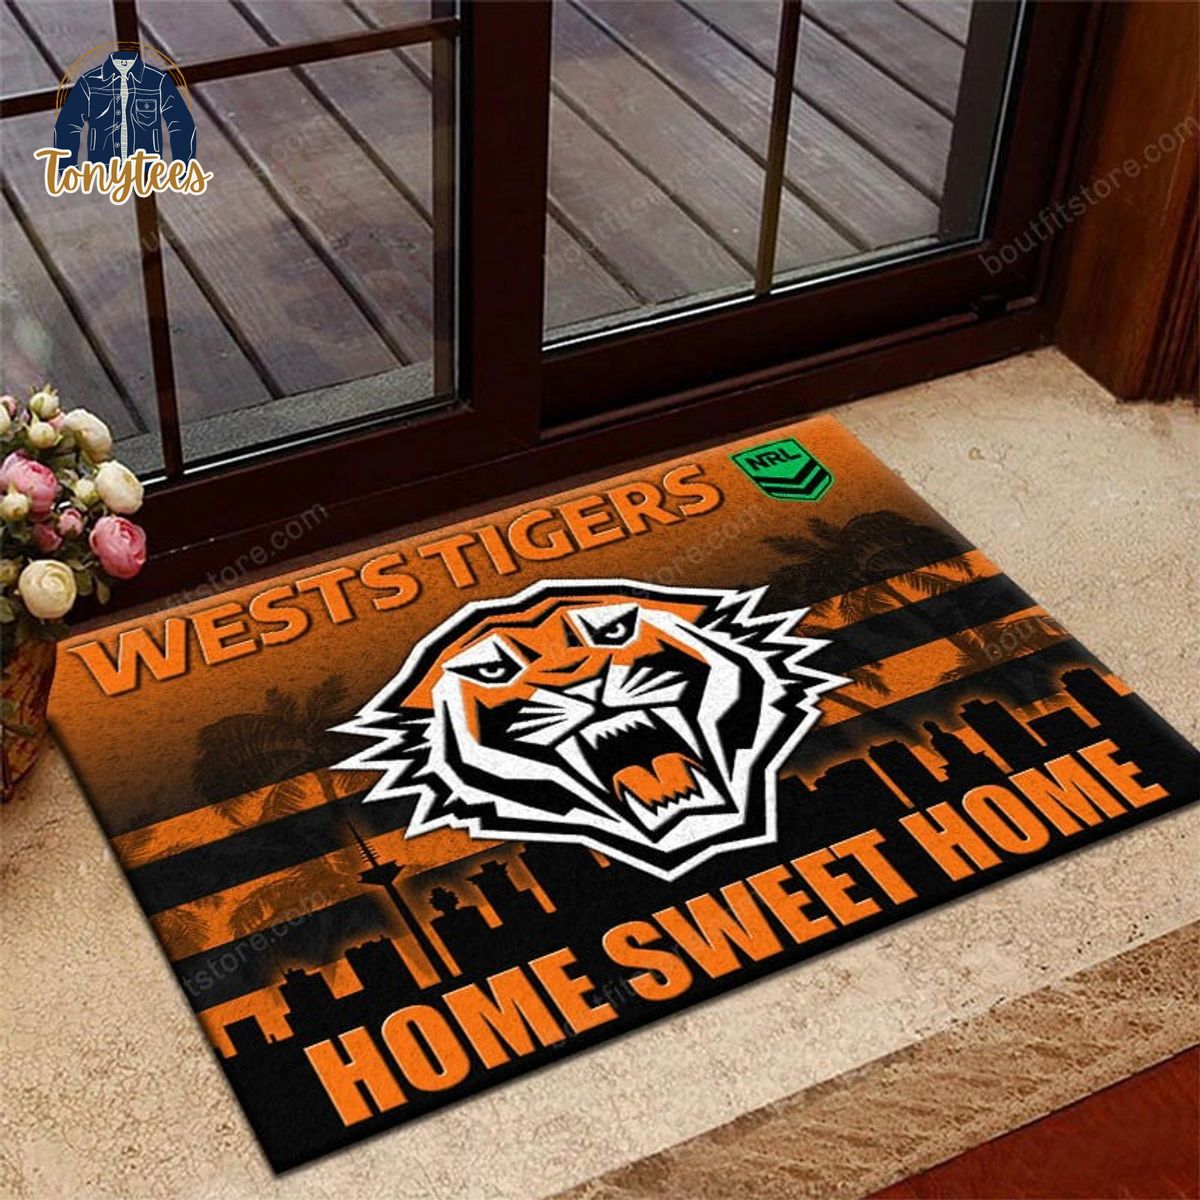 Wests Tigers Home Sweet Home Doormat